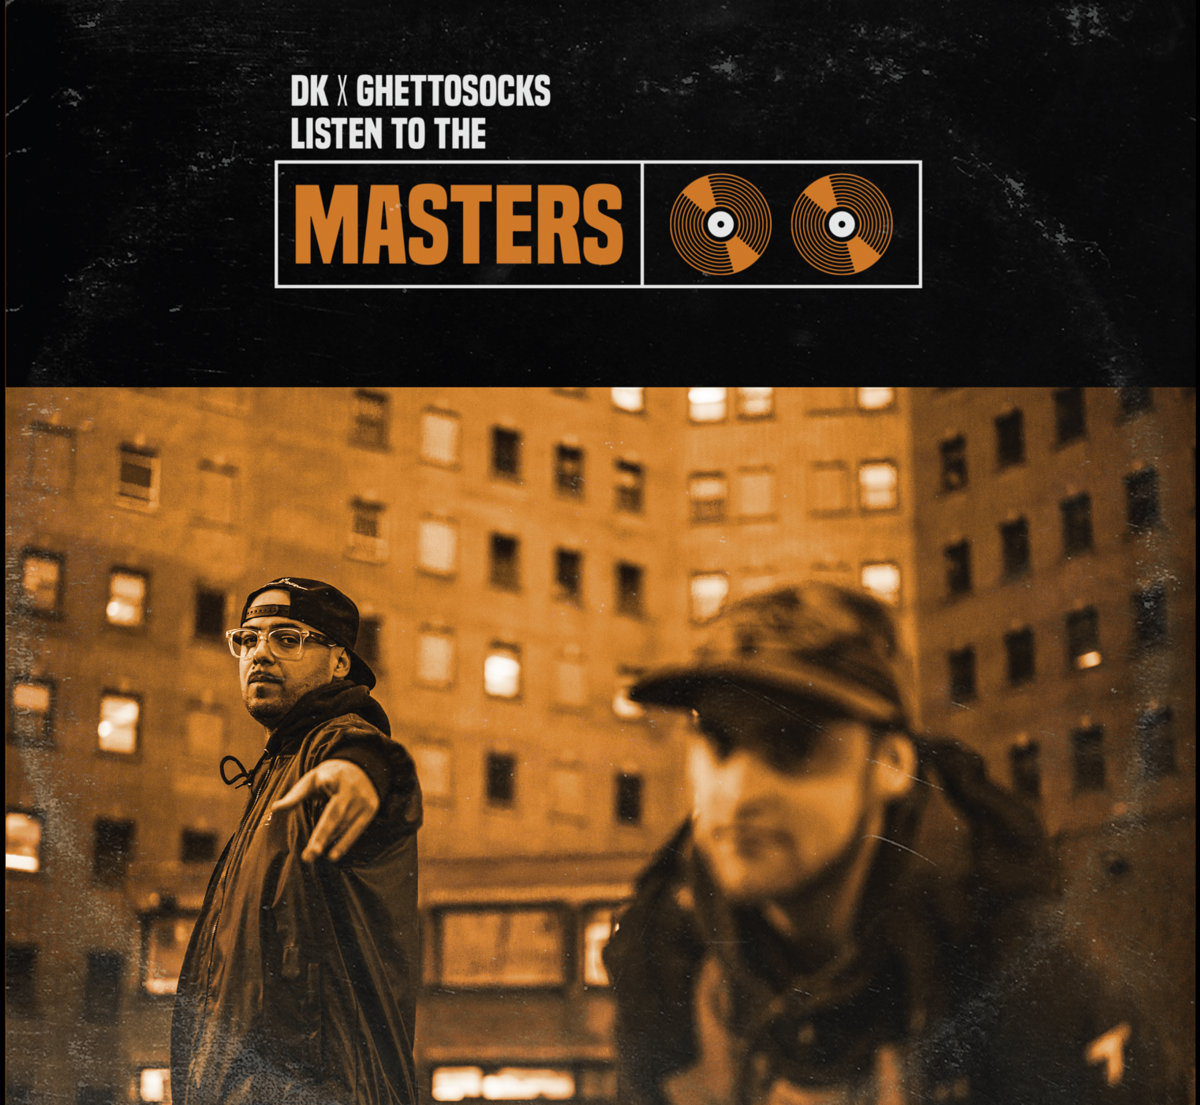 Listen_to_the_masters_ghettosocks_dk